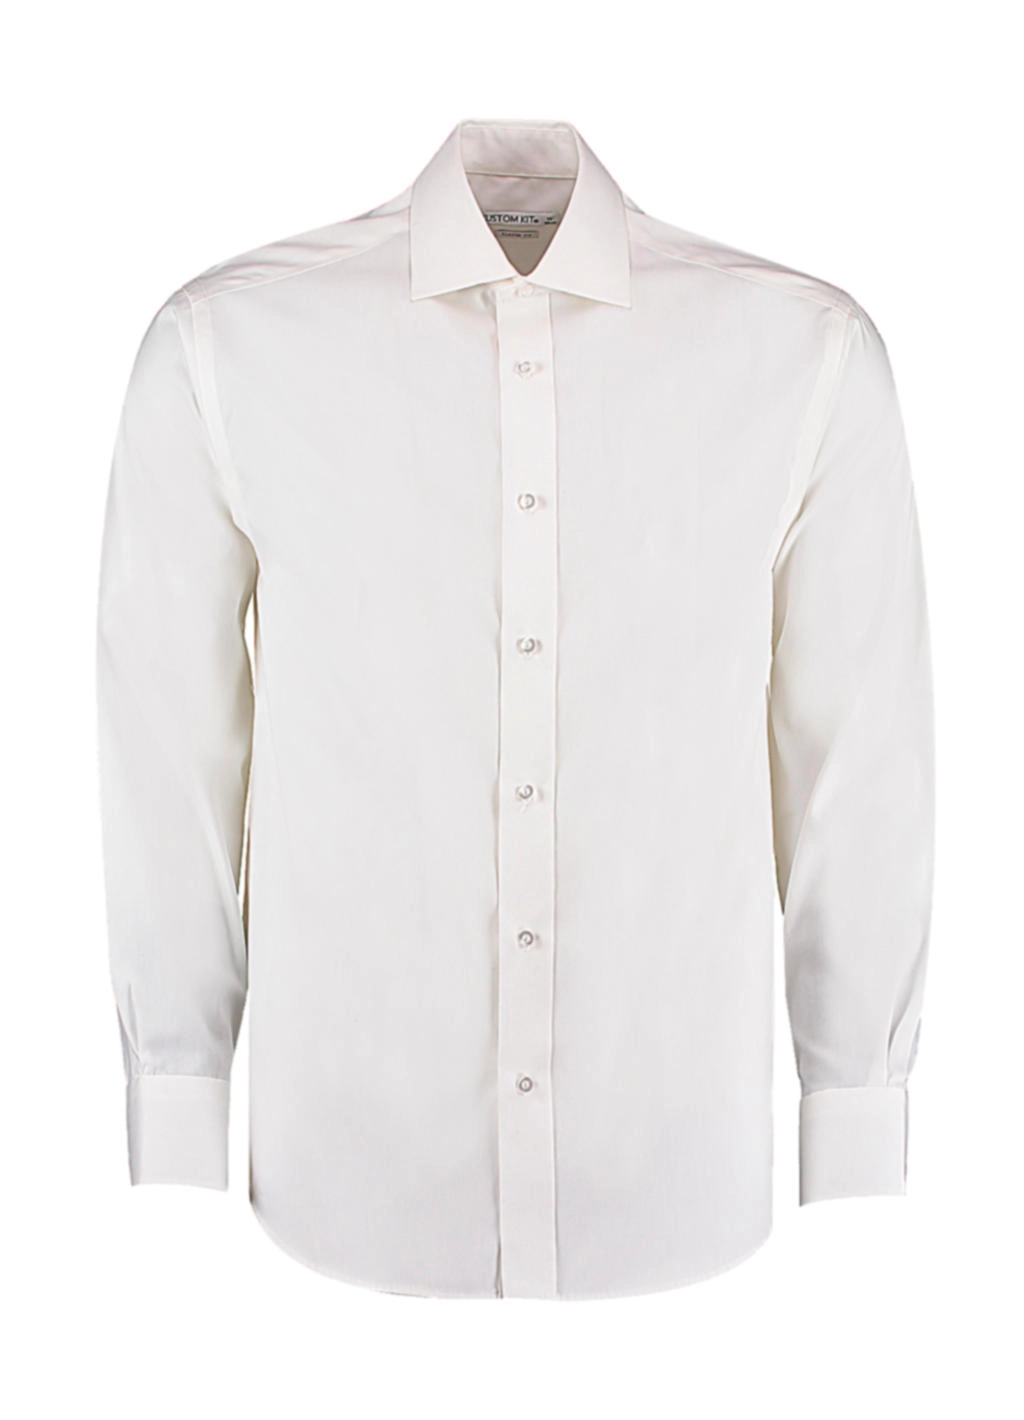 Classic Fit Premium Cutaway Oxford Shirt zum Besticken und Bedrucken in der Farbe White mit Ihren Logo, Schriftzug oder Motiv.